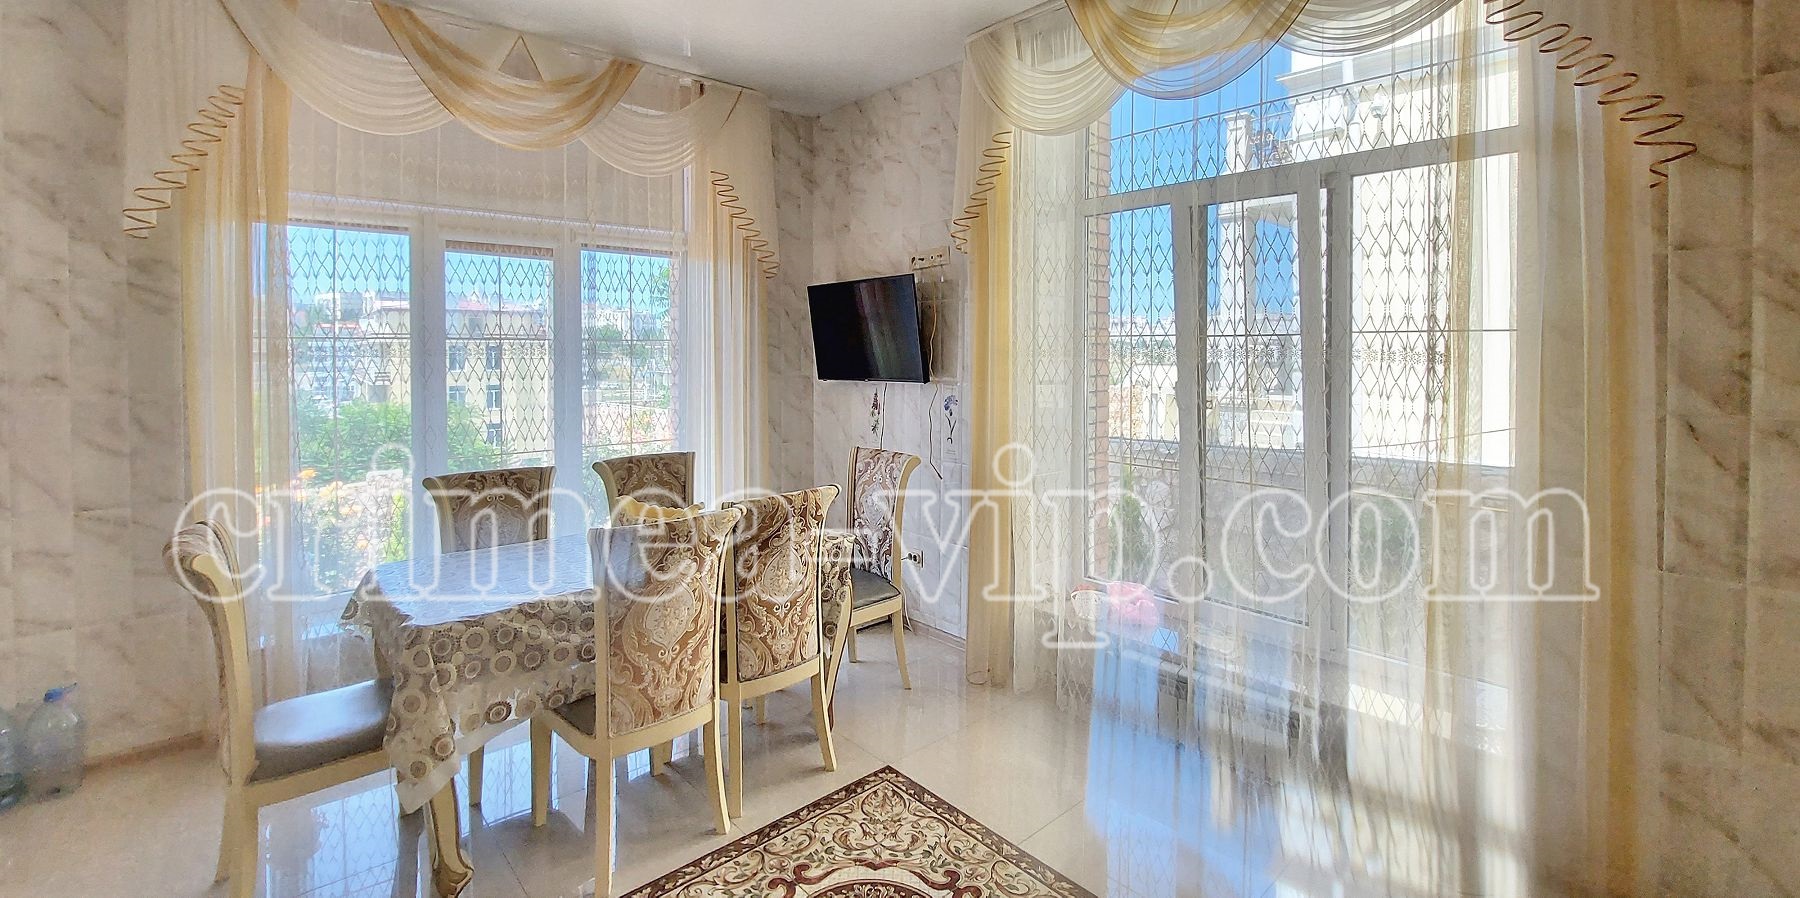 ПН-889 Продажа дома 3+1 спальни в Севастополе.